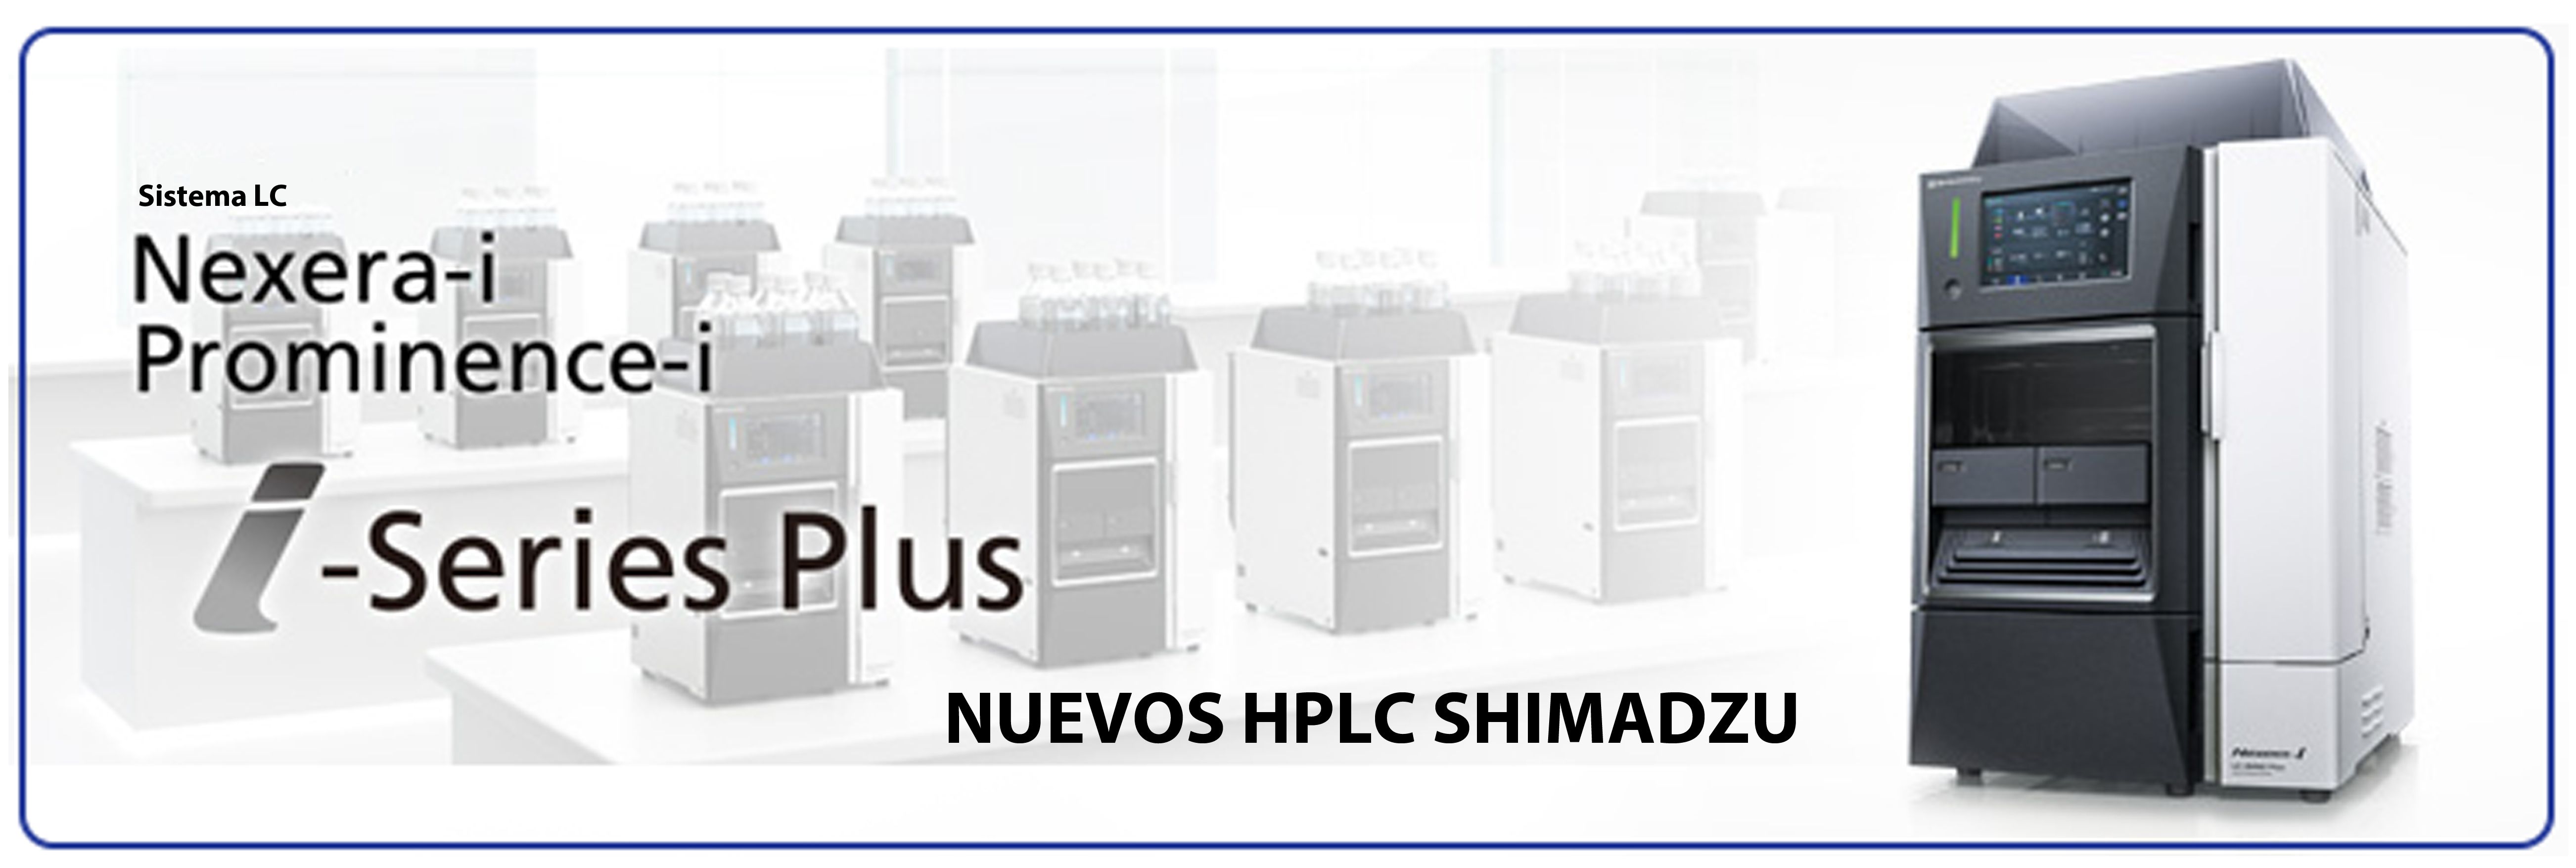 Mejore la productividad de sus análisis con el nuevo HPLC I - Series Plus de Shimadzu